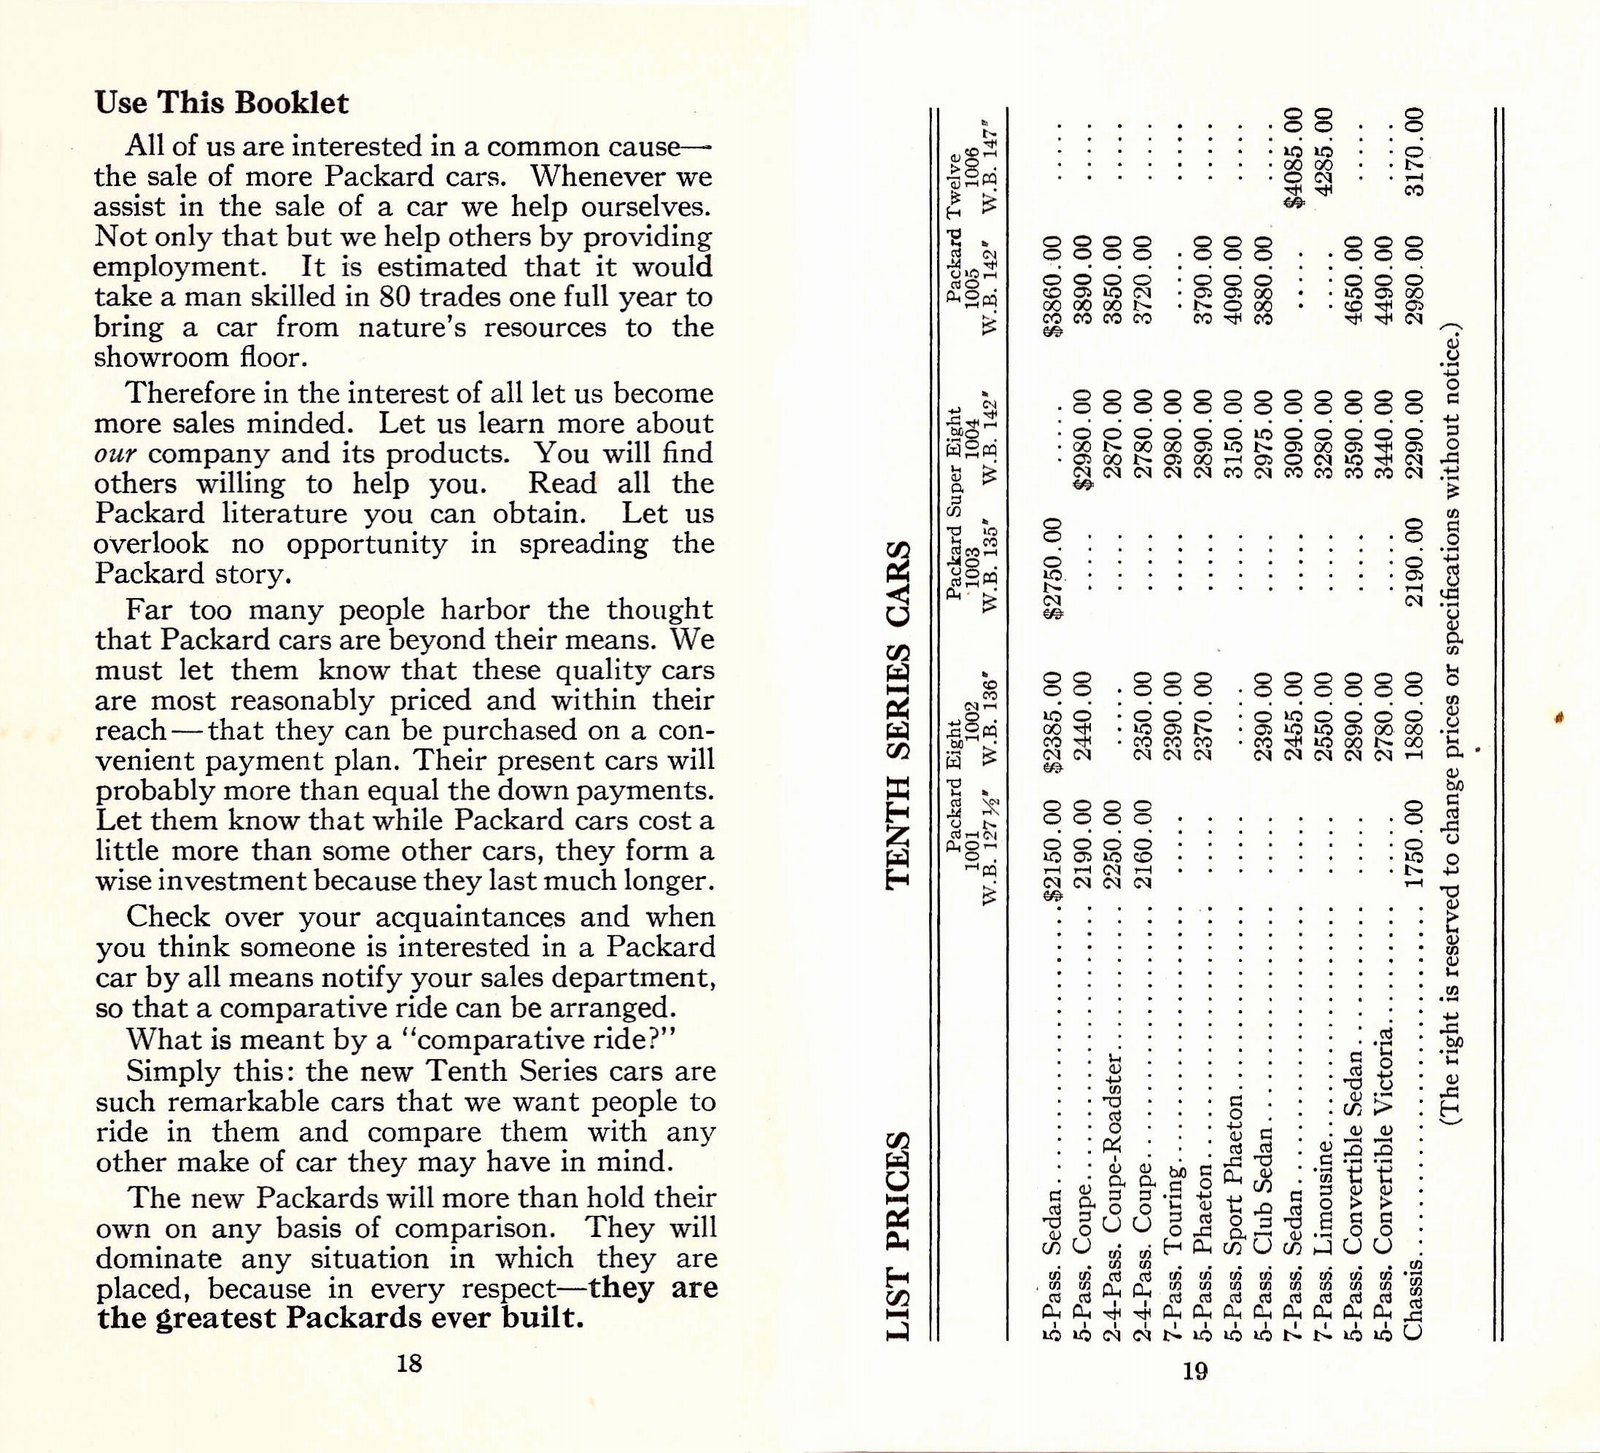 n_1933 Packard Facts Booklet-18-19.jpg